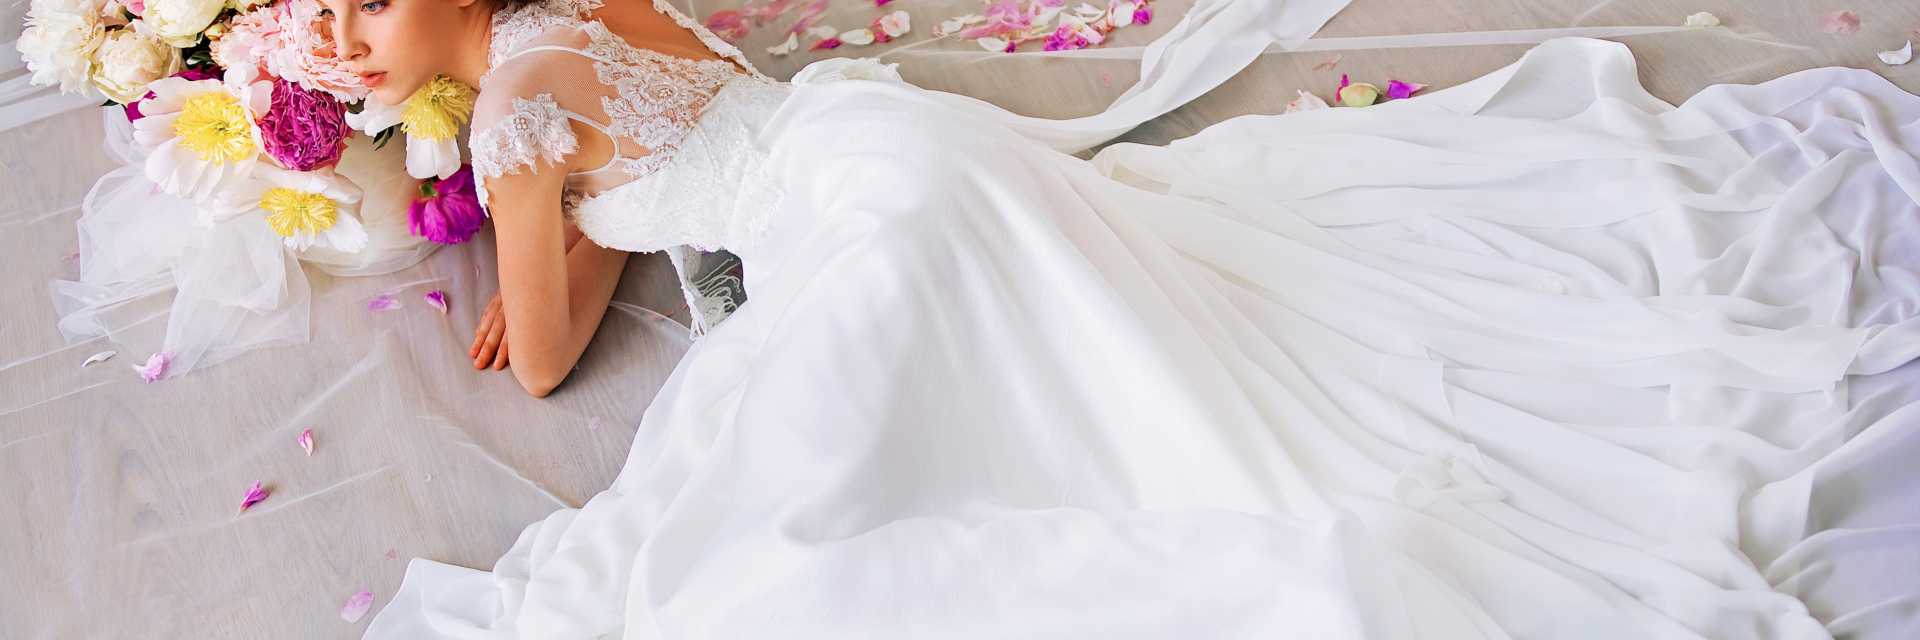 Сон свадьба,белое красивое платье